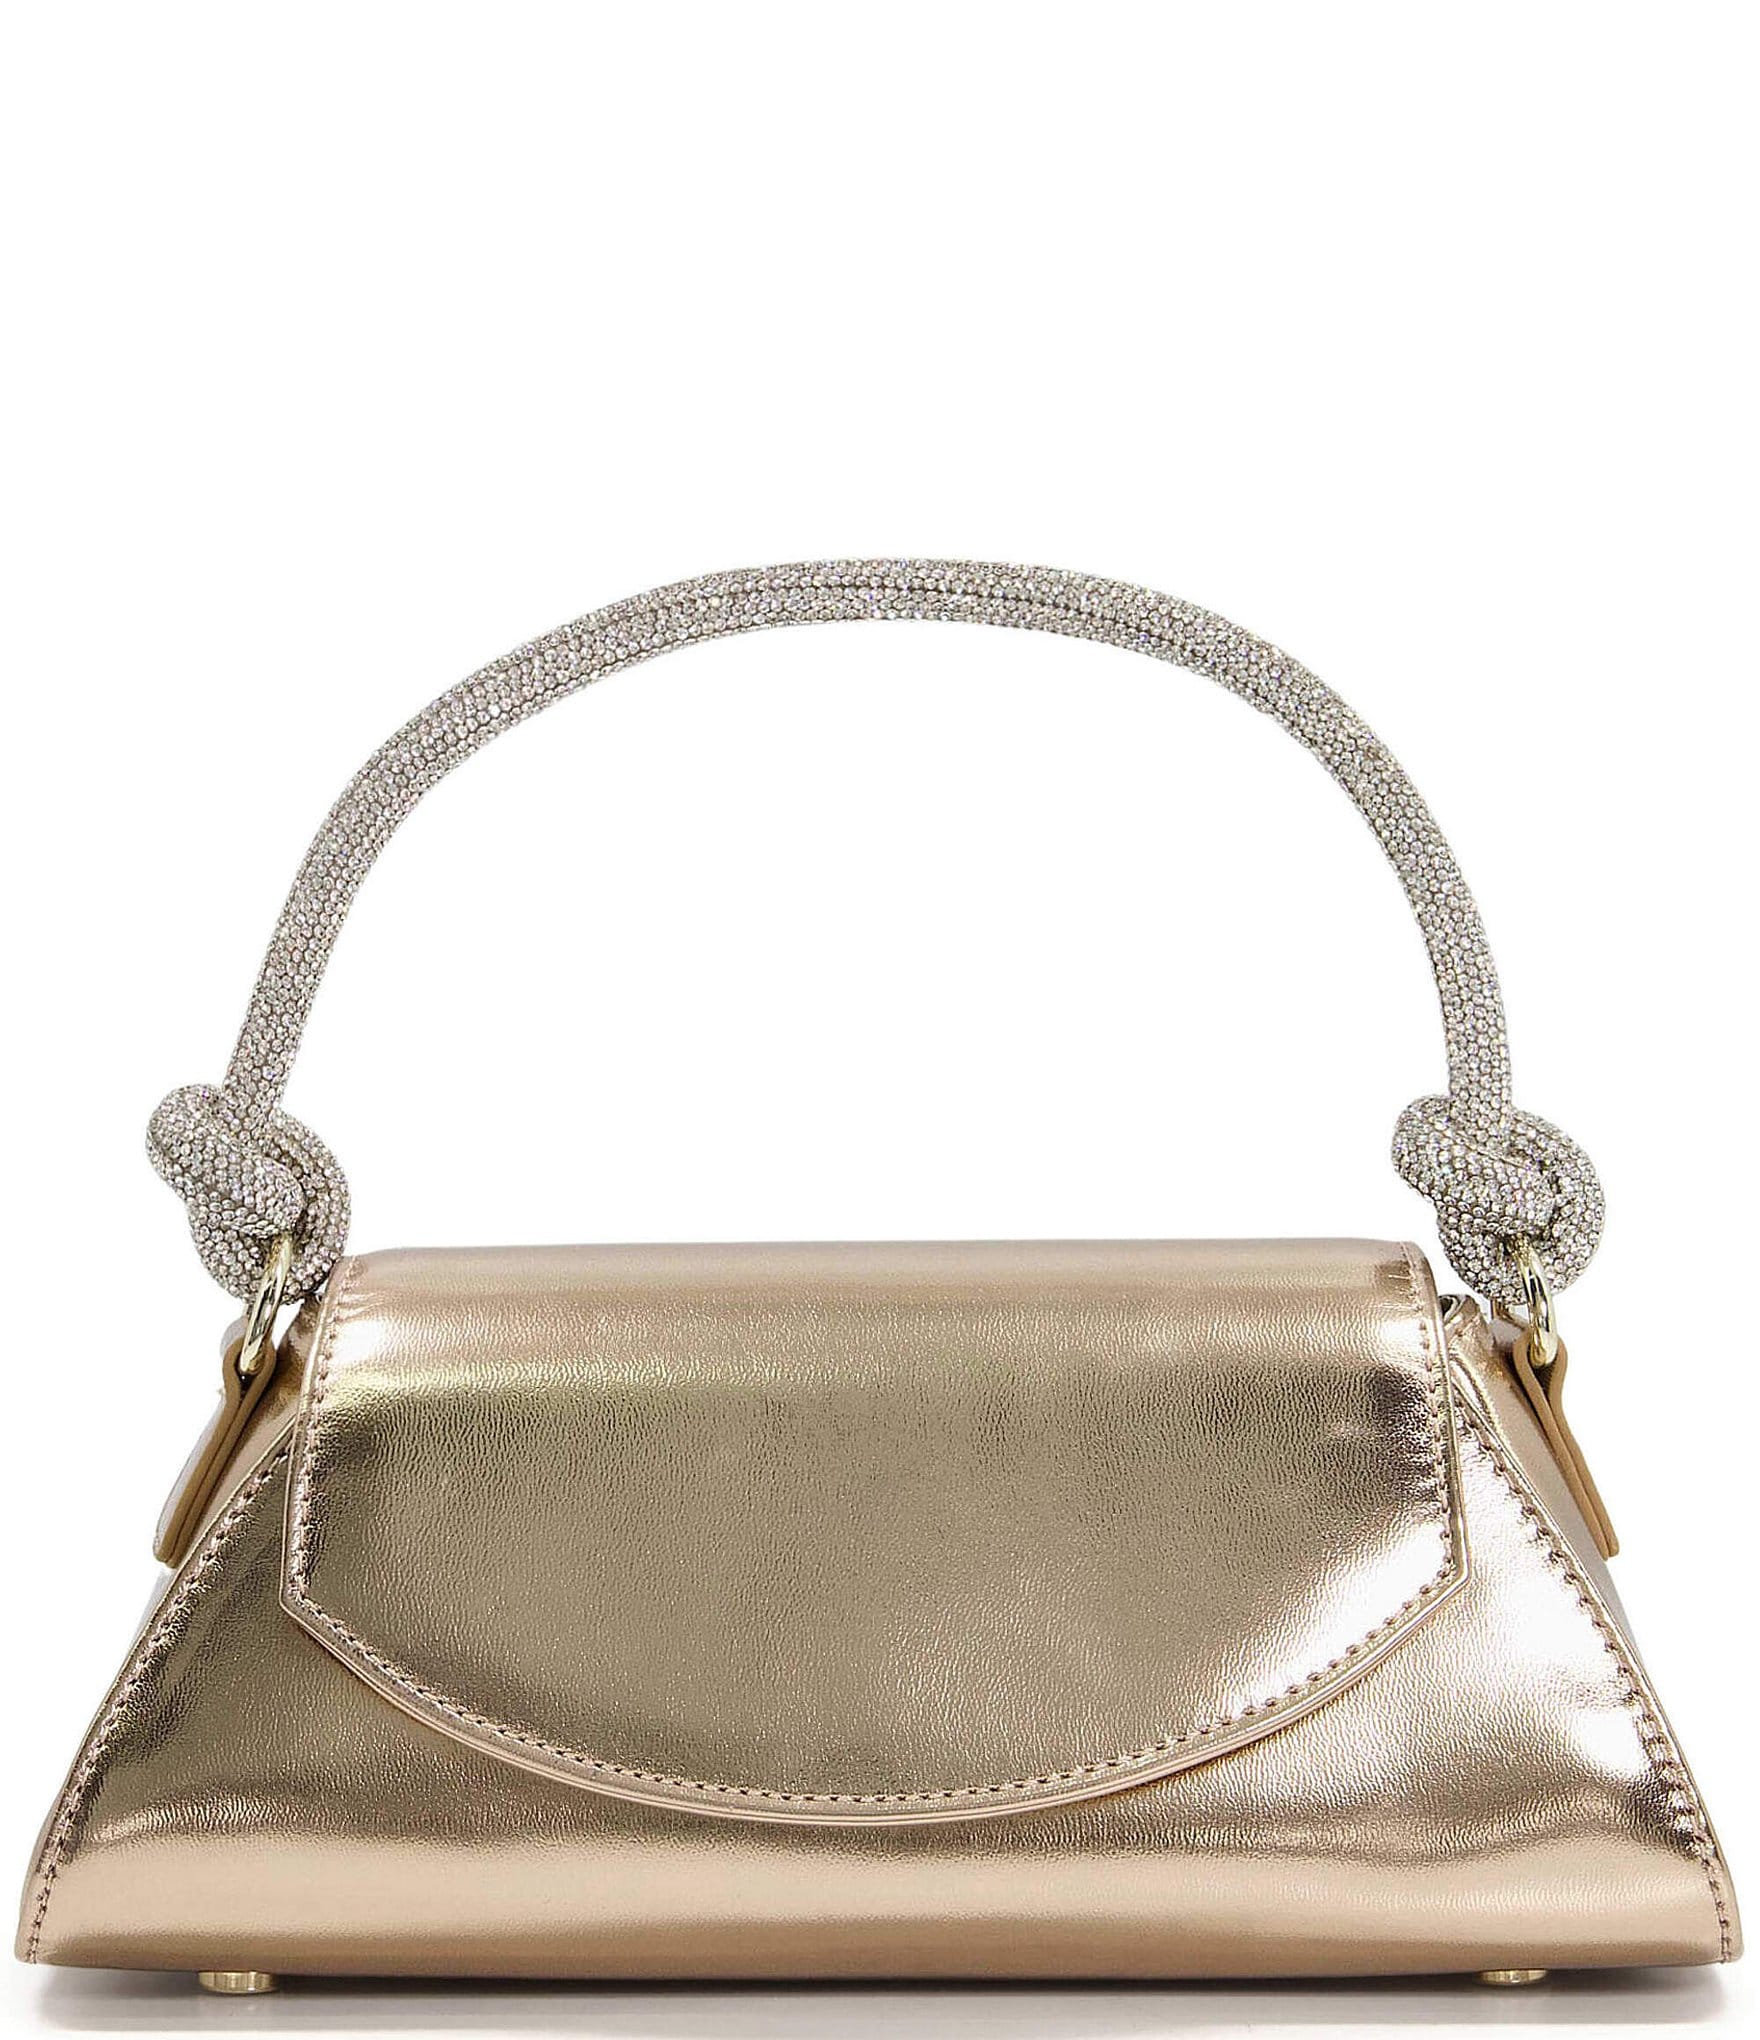 Women Acrylic Evening Bag Glitter Clutch Purse Transparent Golden Box  Handbag